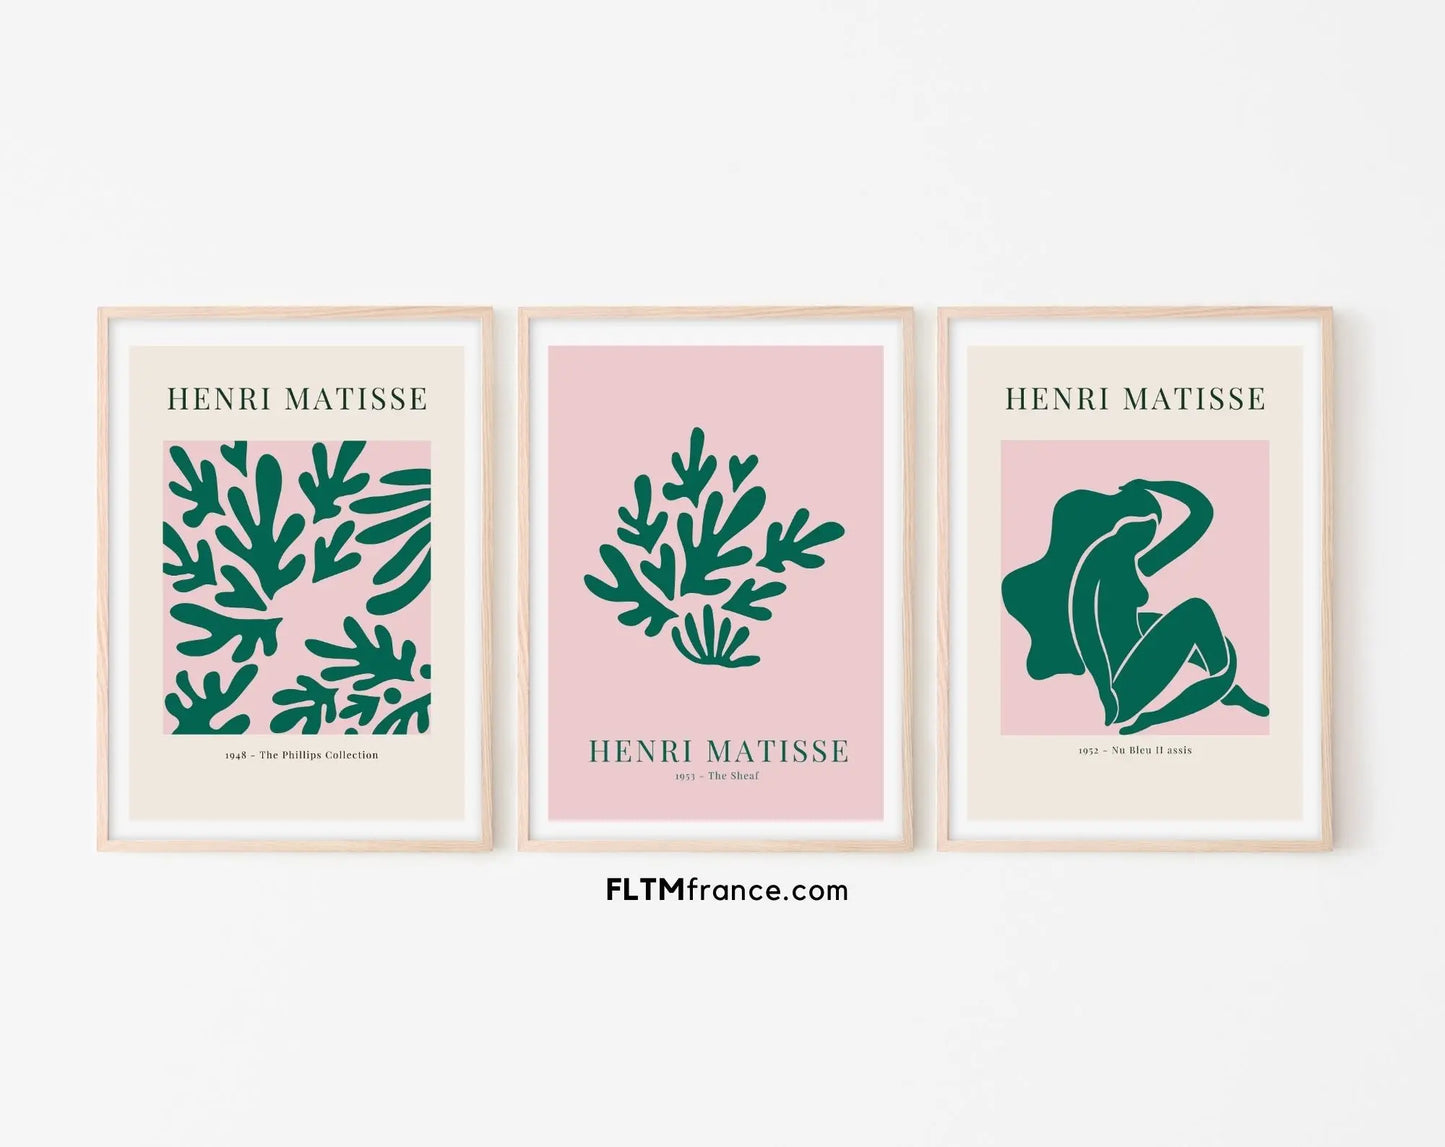 Lot de 3 affiches style Henri Matisse vert et rose - Affiche de musée FLTMfrance